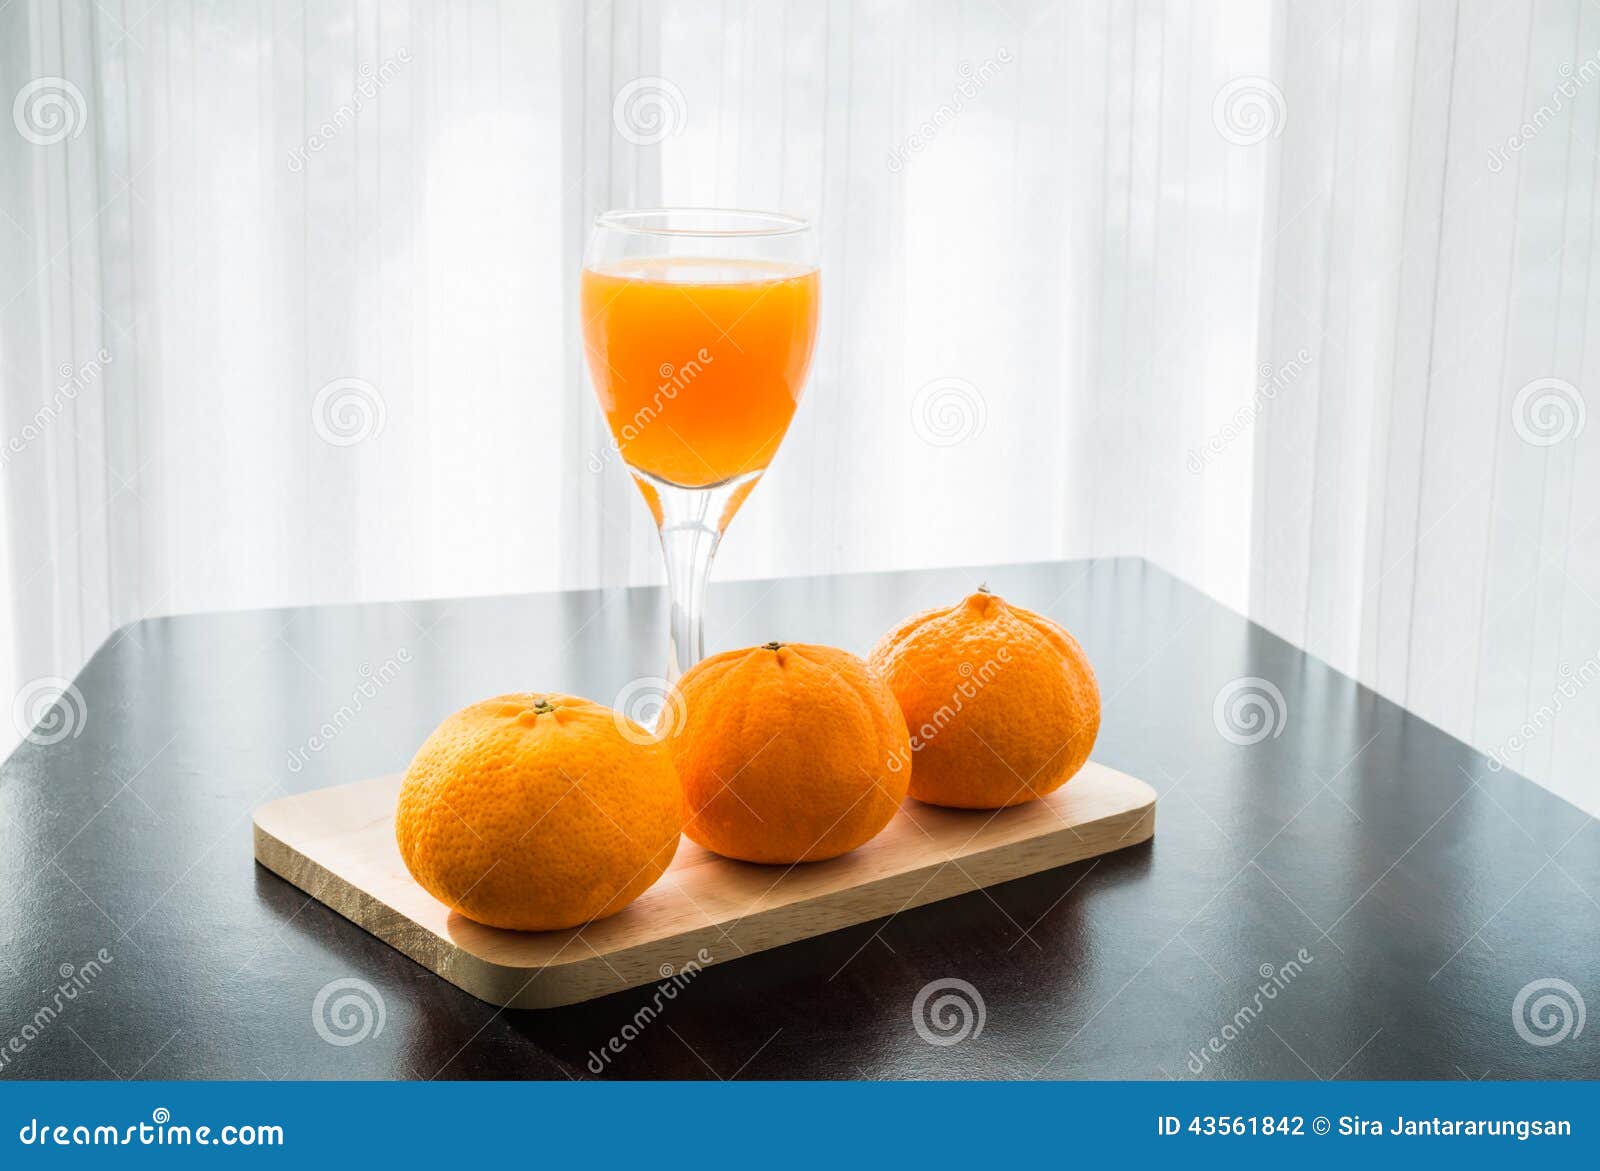 https://thumbs.dreamstime.com/z/glass-freshly-pressed-orange-juice-three-orange-wooden-table-43561842.jpg